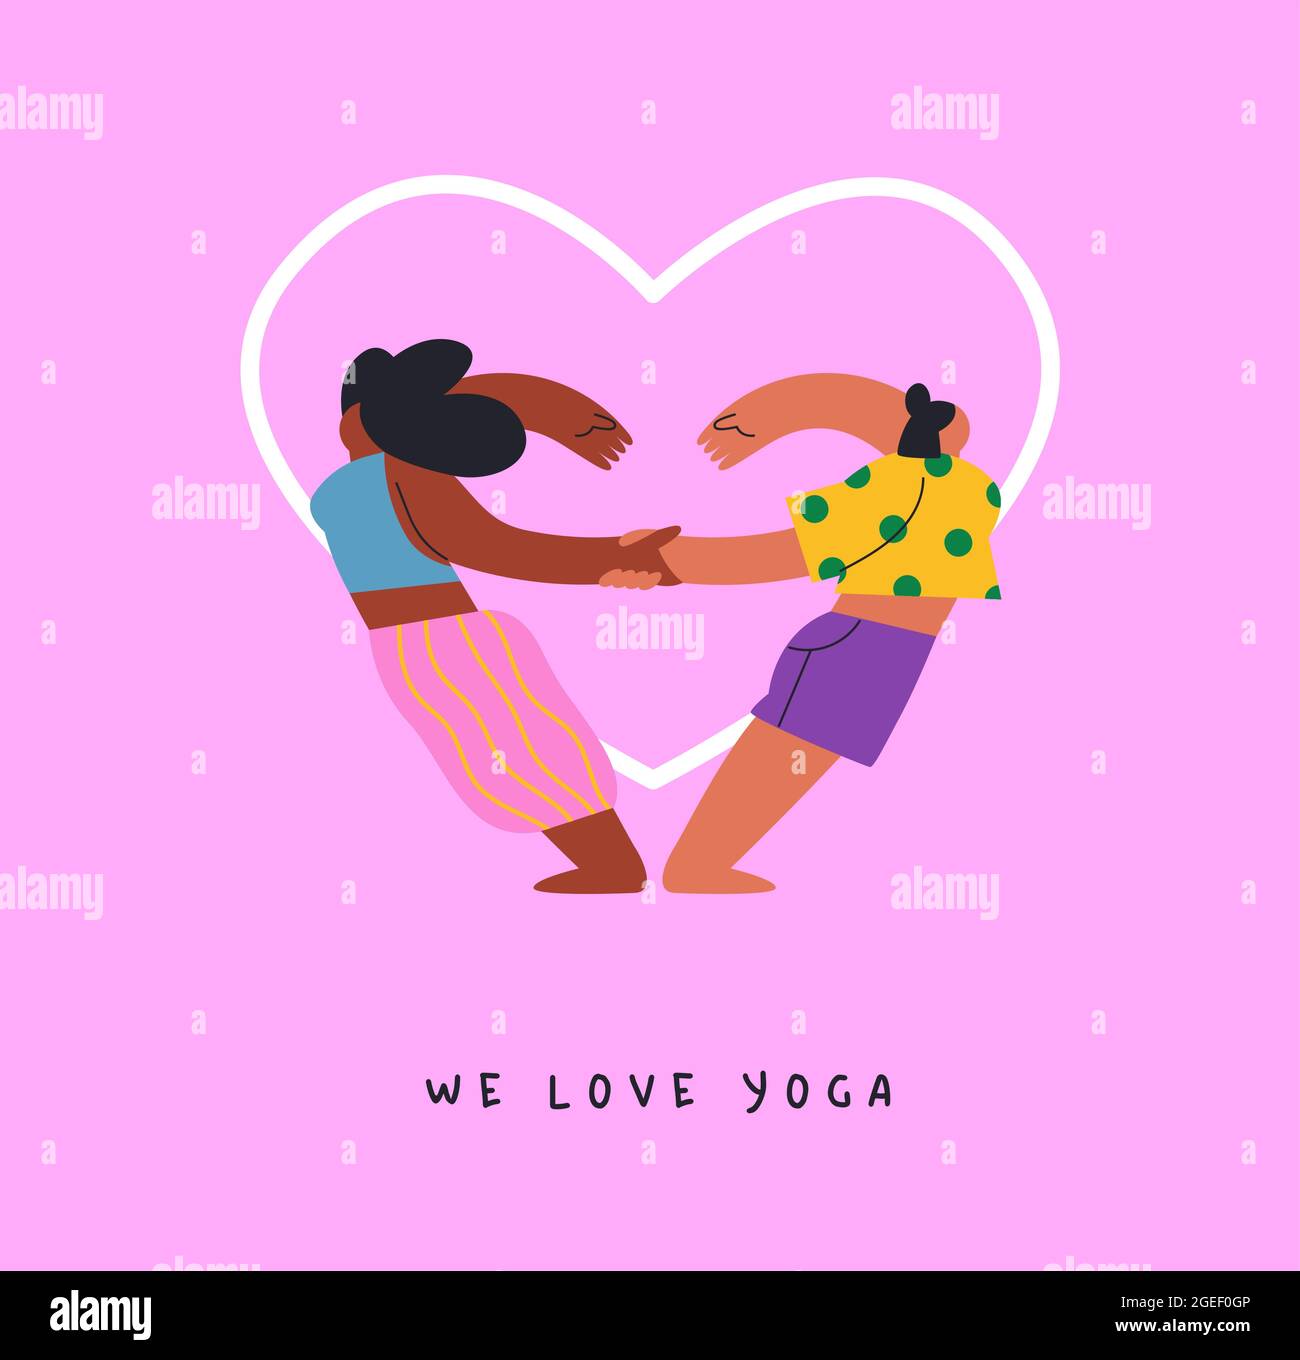 Yoga con amici illustrazione di due giovani donne amico squadra facendo esercizio posa in forma di cuore. Divertente disegno di cartone animato piatto per l'amore o la misura di amicizia Illustrazione Vettoriale